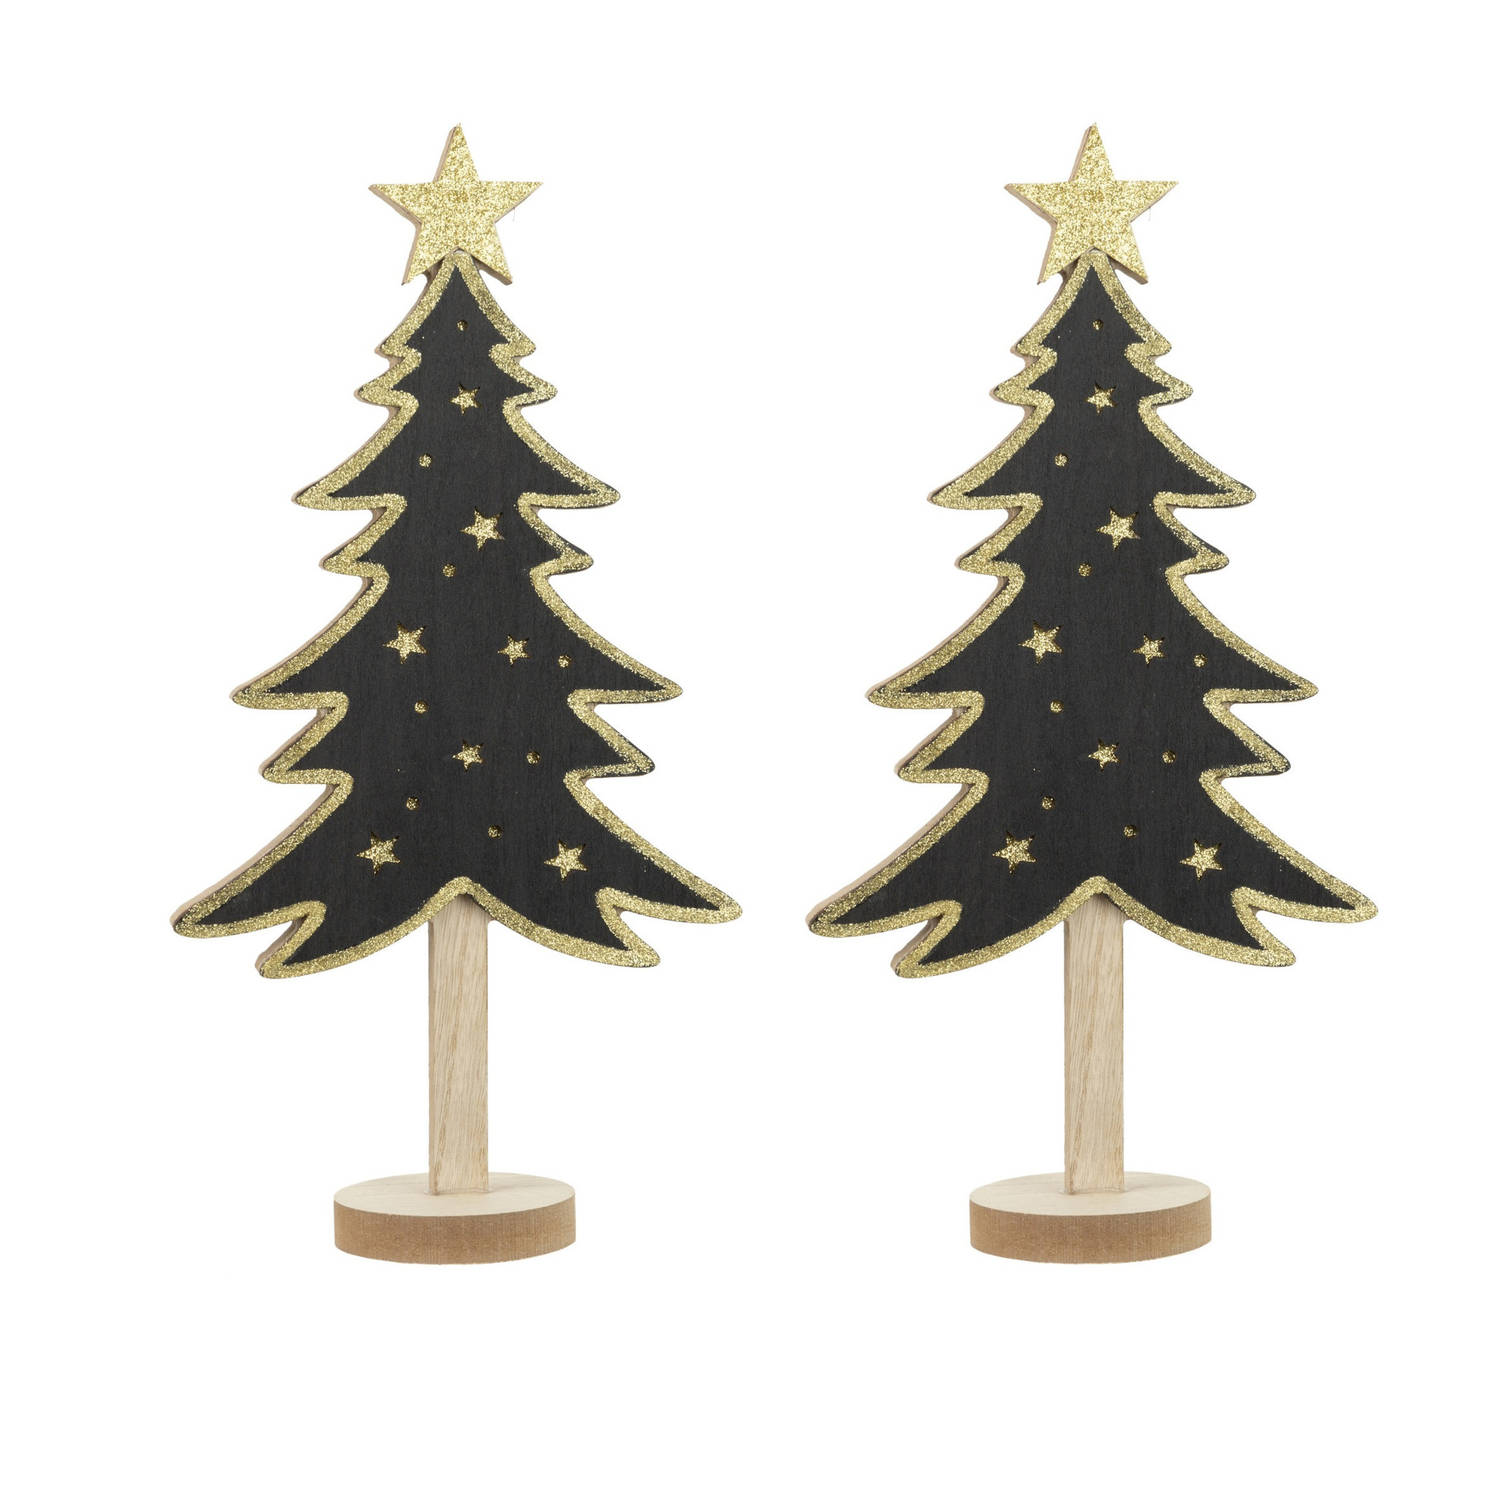 2x Stuks Kerstdecoratie Houten Decoratie Kerstboom Zwart Met Gouden Sterren B18 X H36 Cm Kunstkerstb